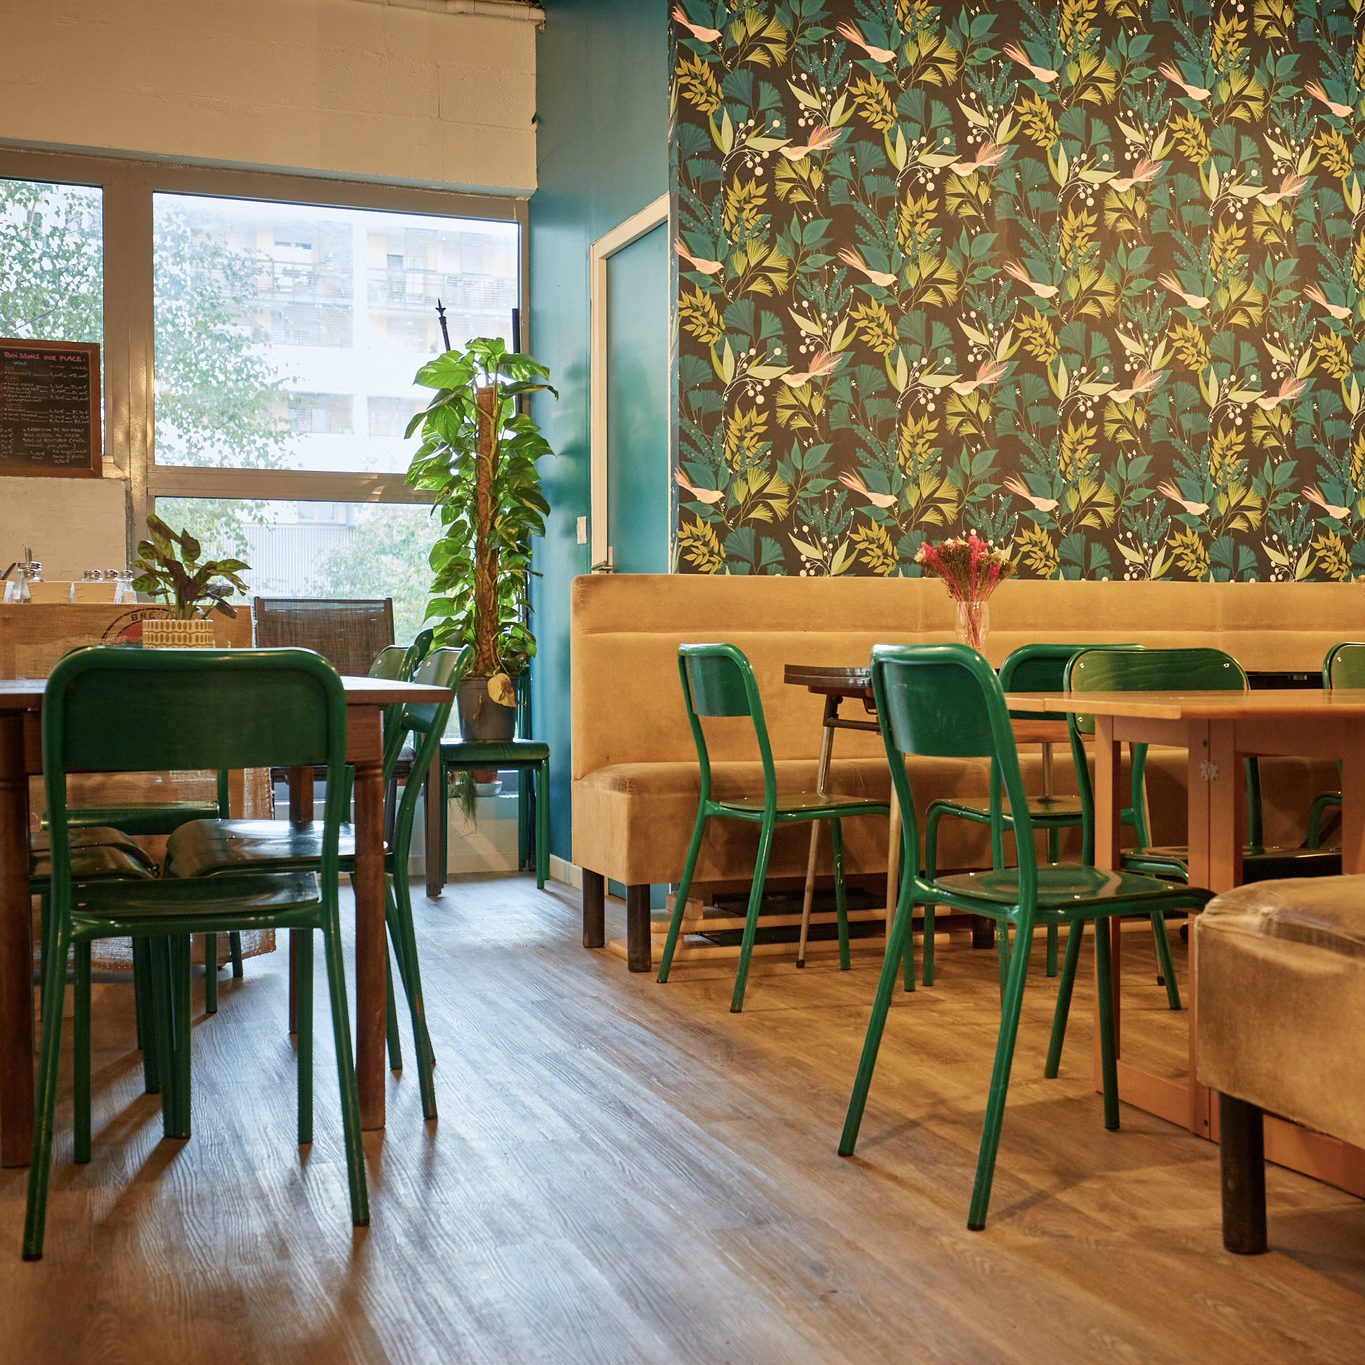 Image d'intérieur de La Récolte Citadine, chaises vertes, sol en bois, mur en papier peint